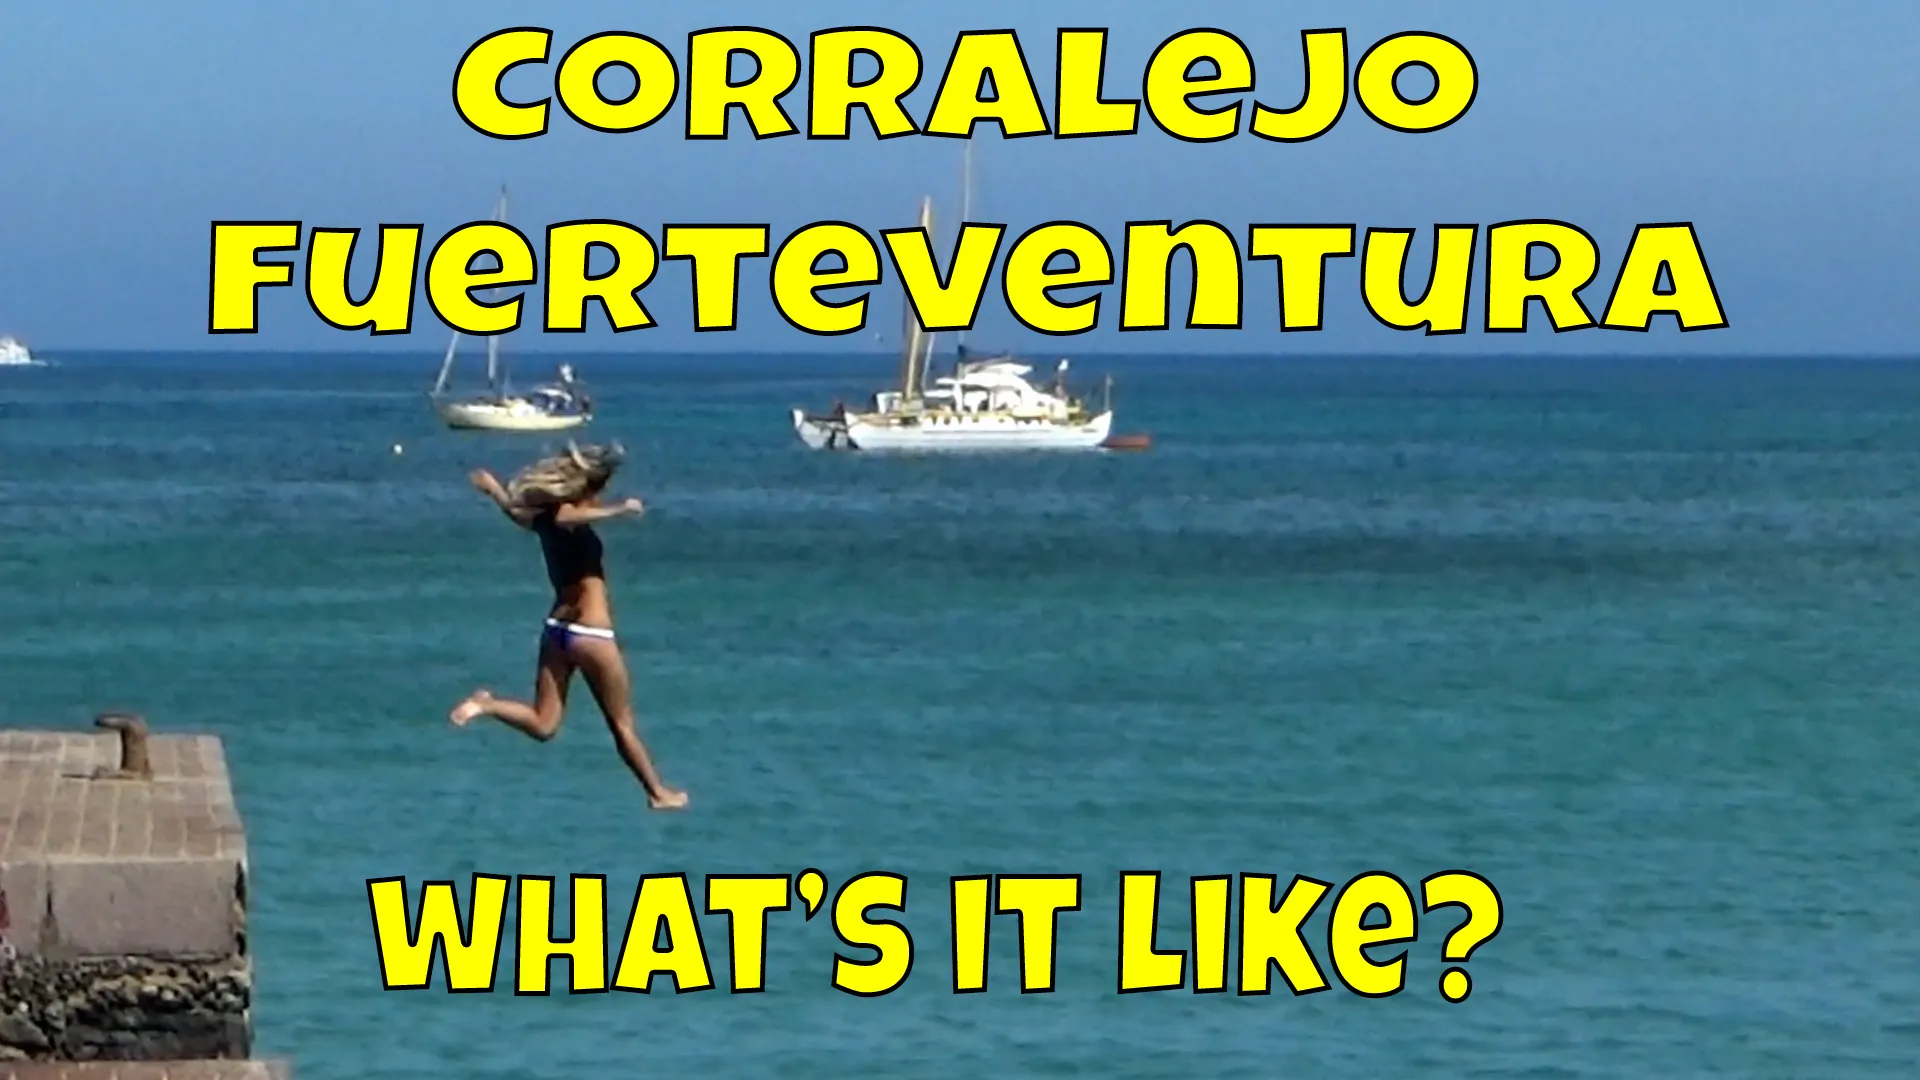 Corralejo Fuerteventura – What is it like?